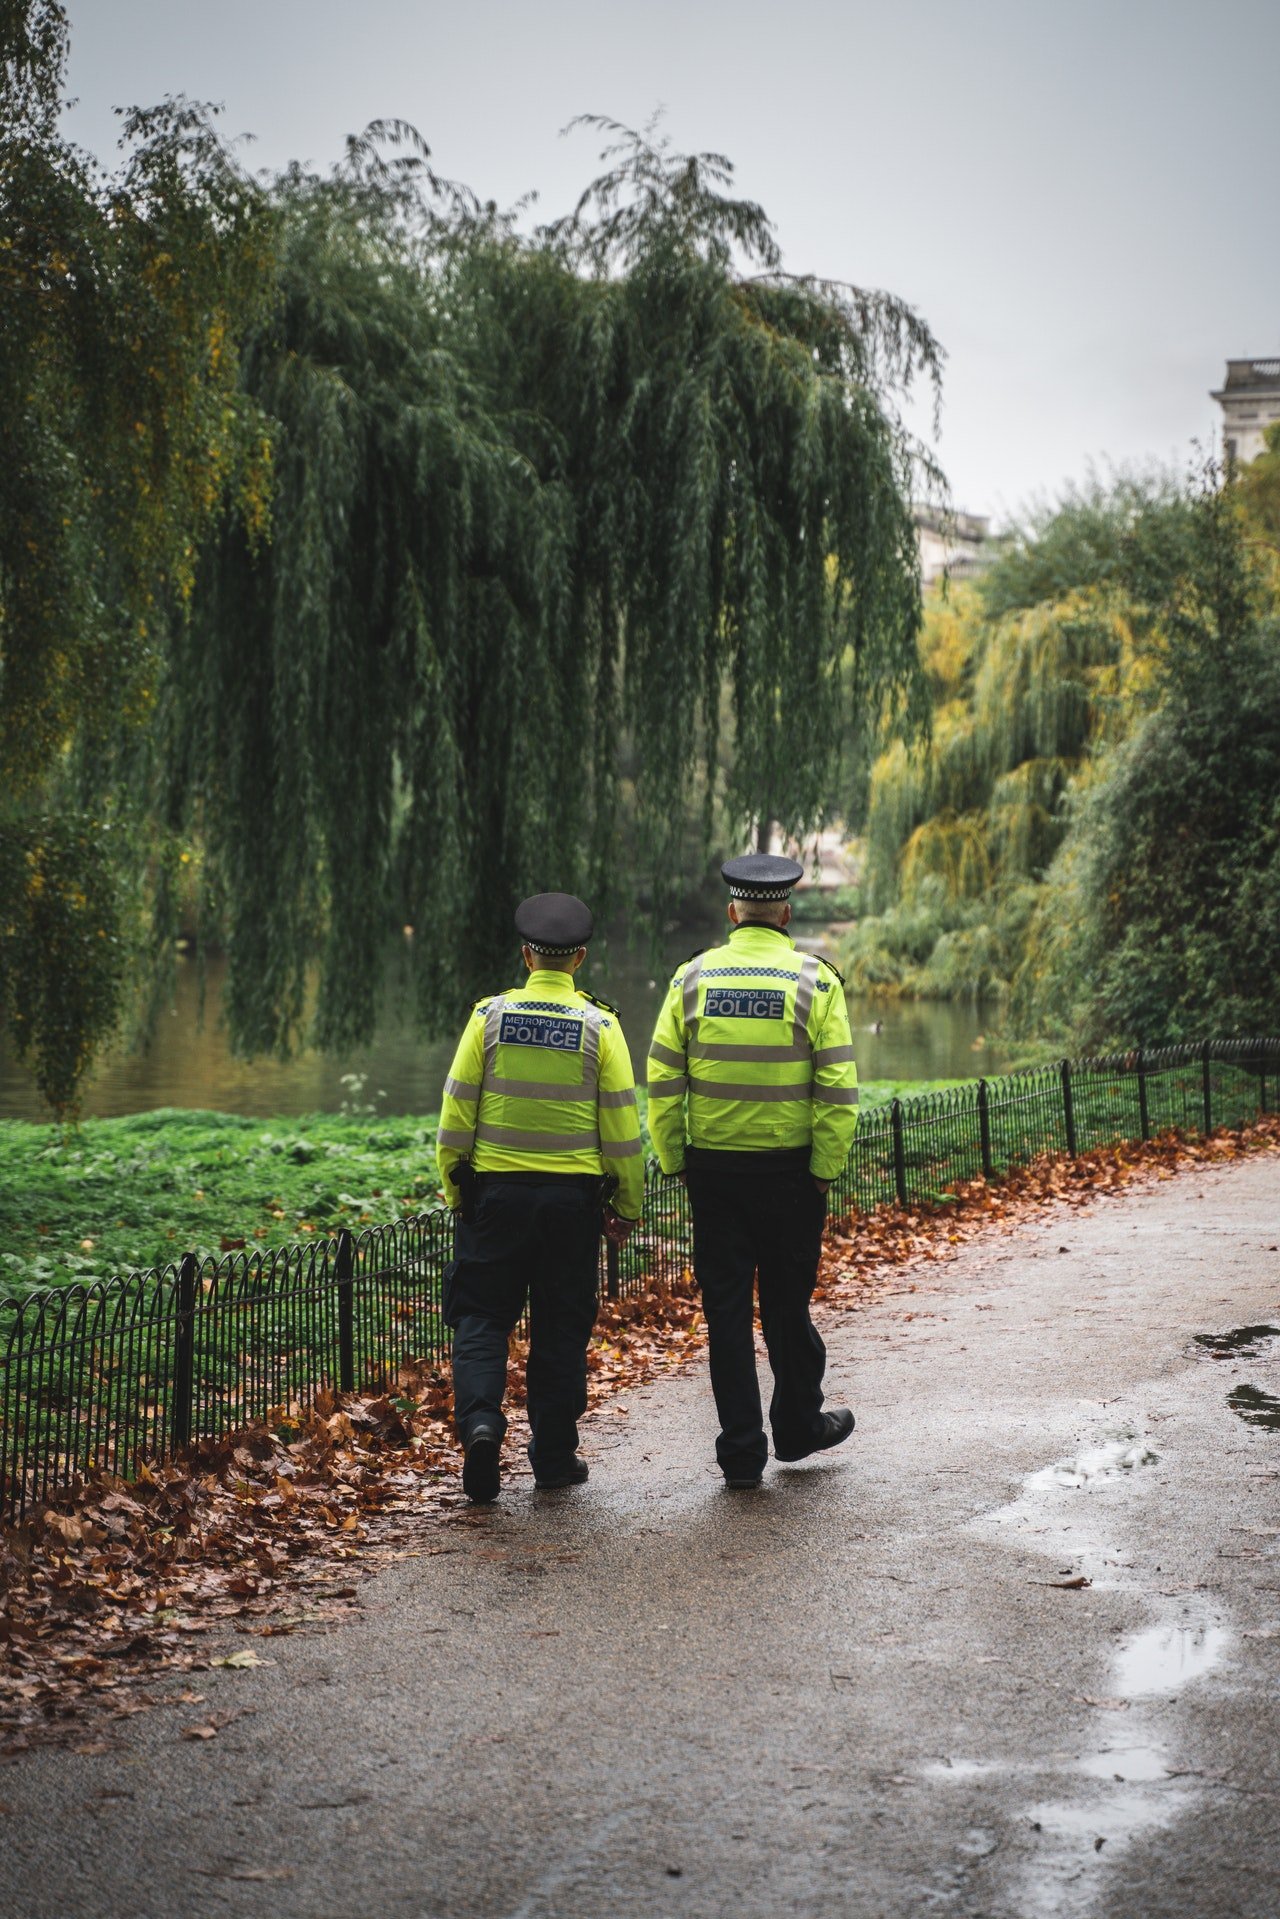 Policías en un parque. | Foto: Pexels